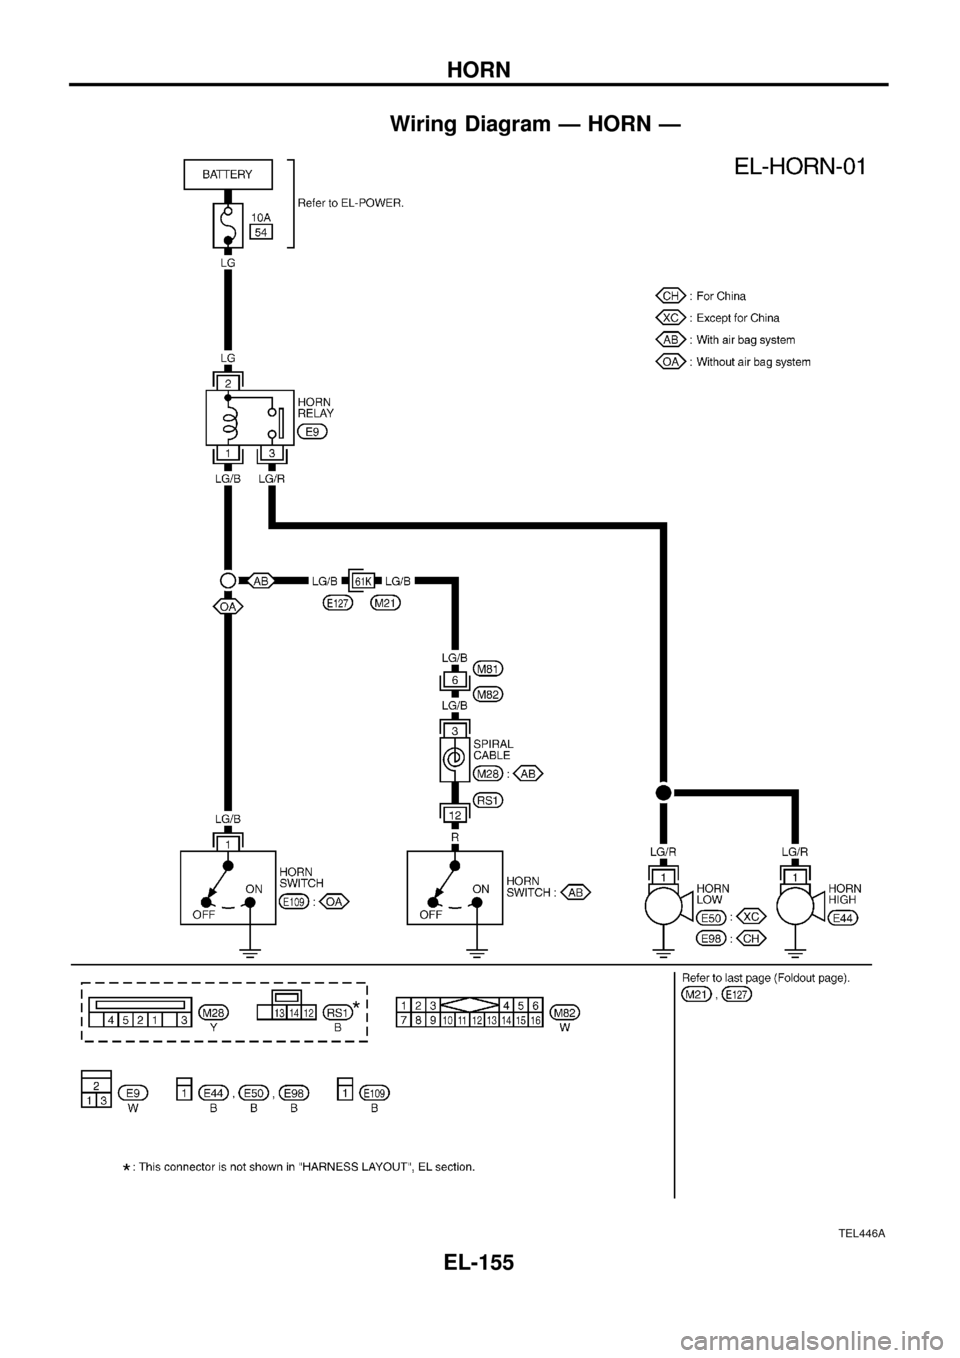 NISSAN PATROL 1998 Y61 / 5.G Electrical System Workshop Manual Wiring Diagram Ð HORN Ð
TEL446A
HORN
EL-155 